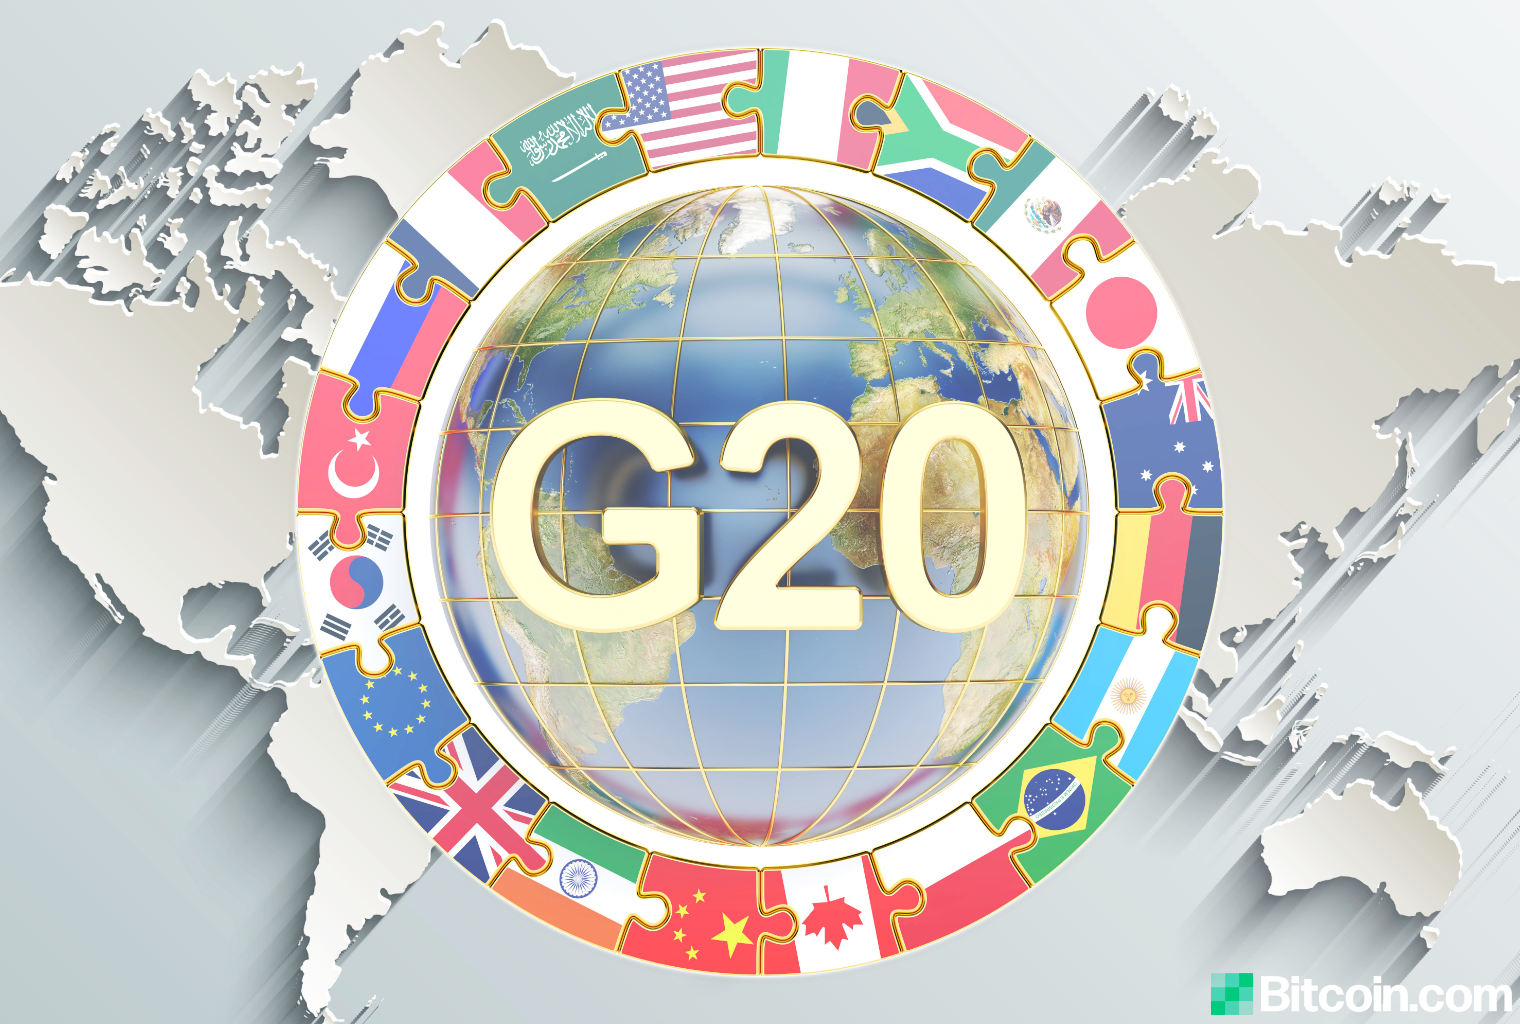 G20-informerte stablecoins kan utgjøre finansiell stabilitetsrisiko